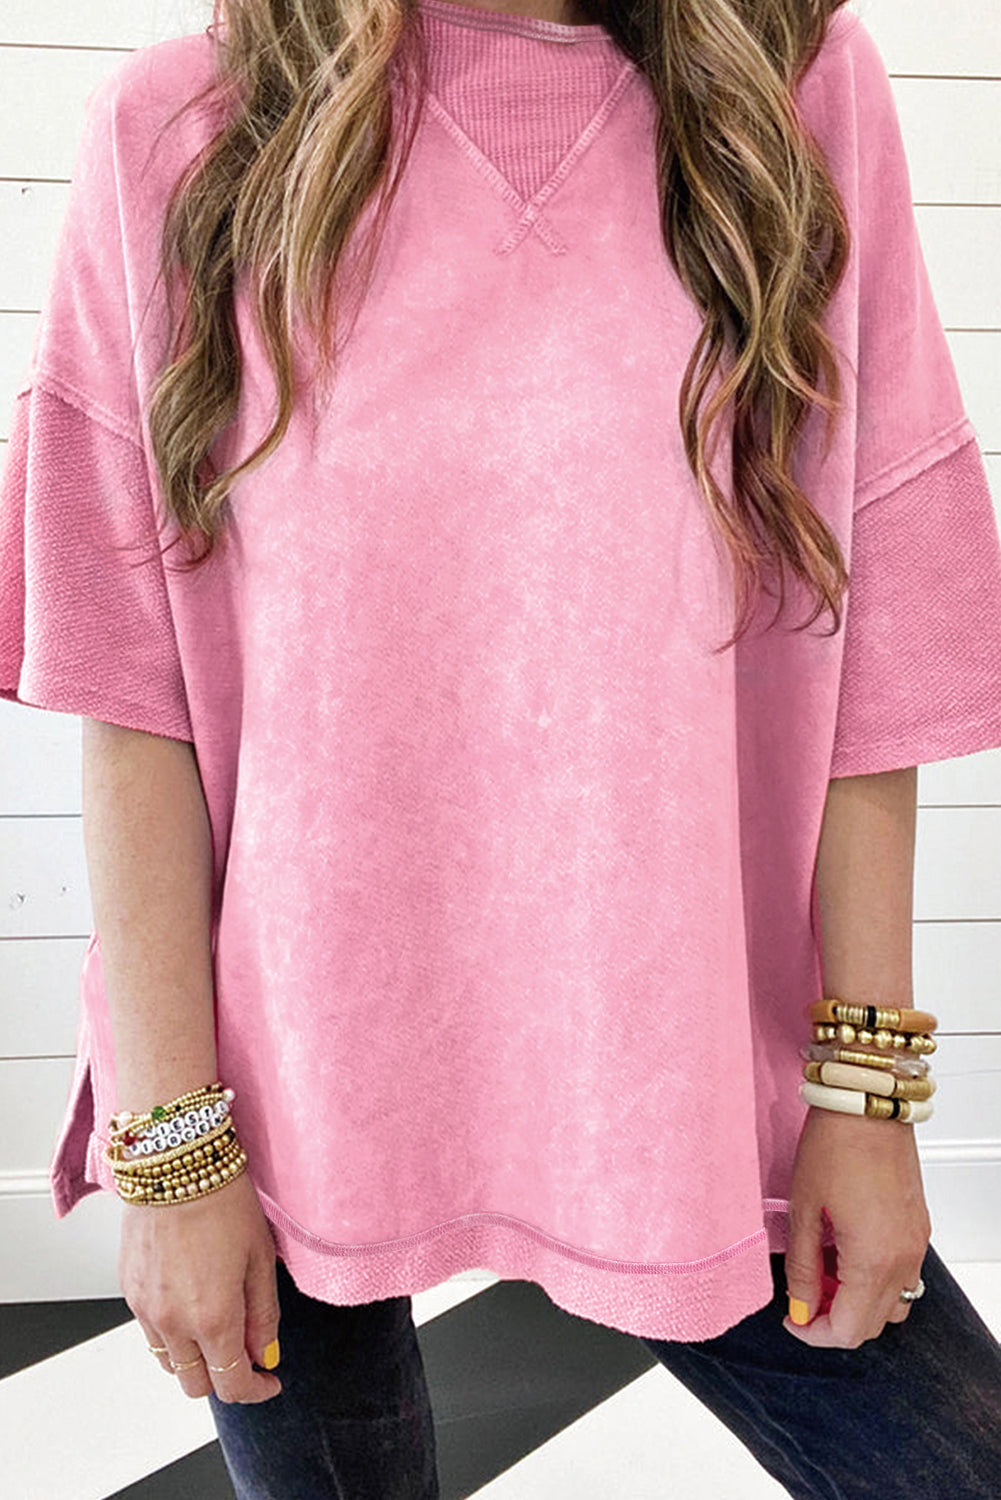 Ogromna majica z izpostavljenimi šivi in ​​spuščenimi rameni v obliki jagodno rožnate mineralne barve